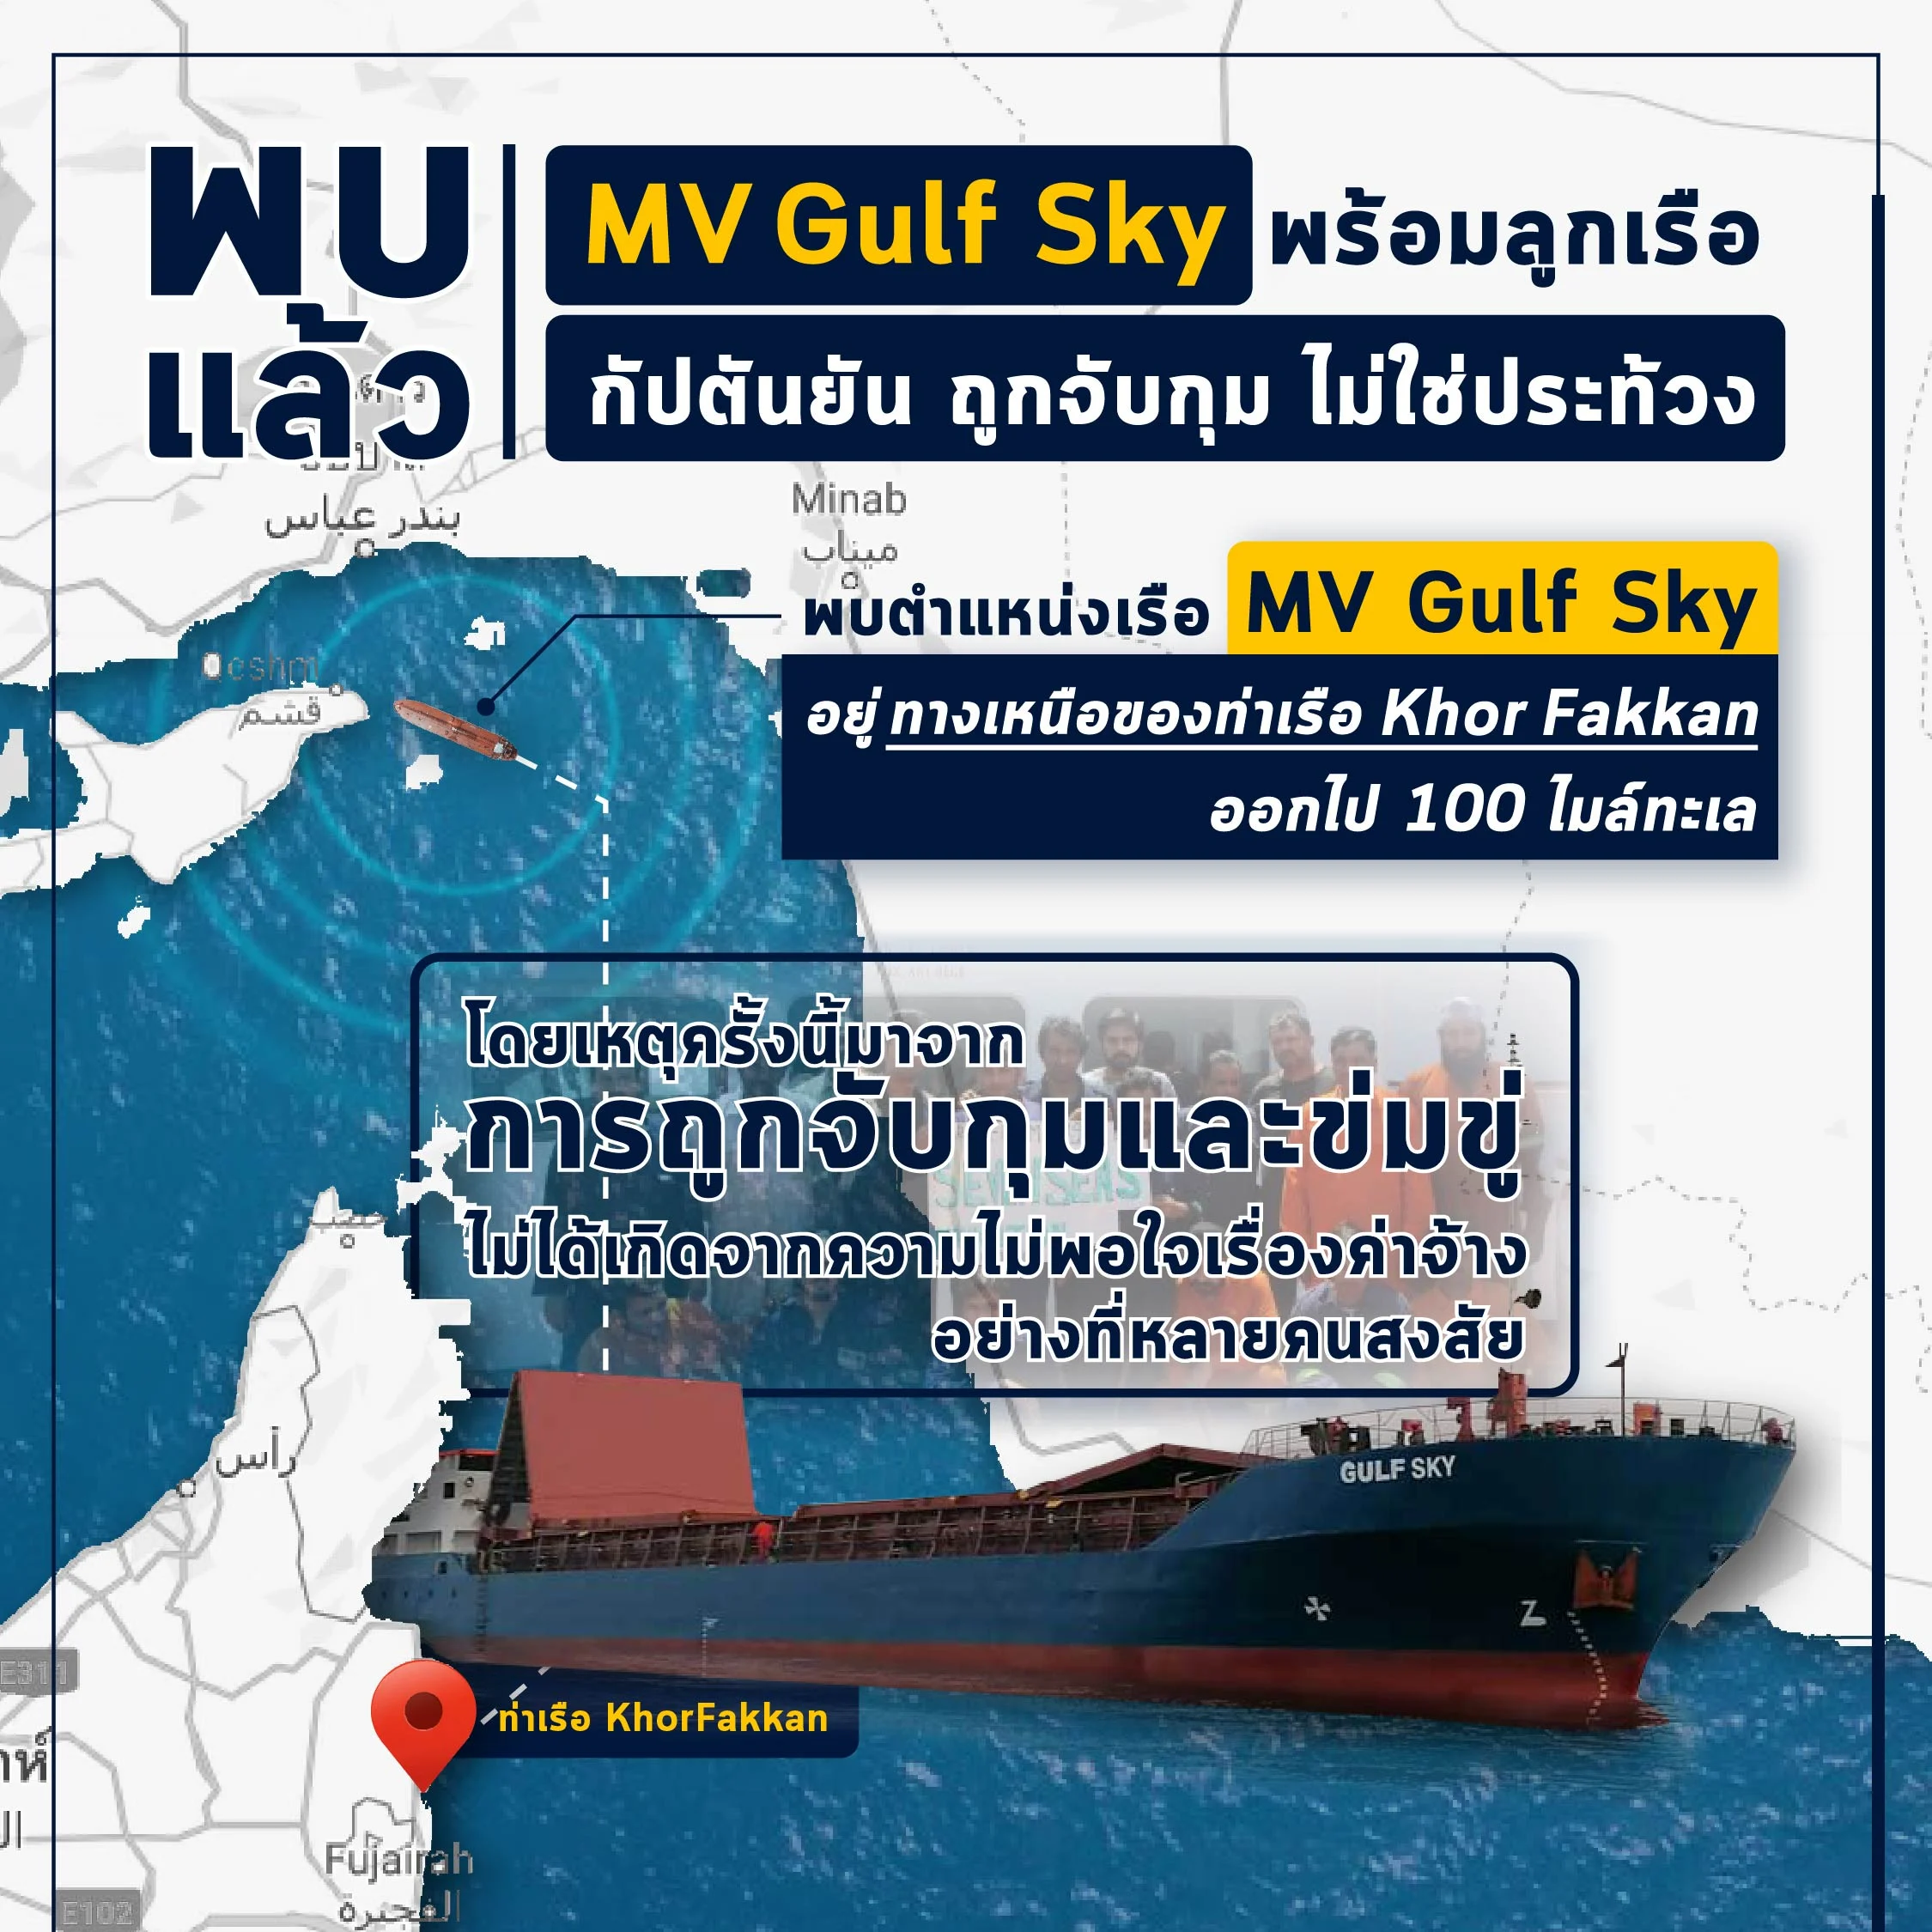 พบแล้ว! เรือ MV Gulf Sky และลูกเรือทั้งหมด